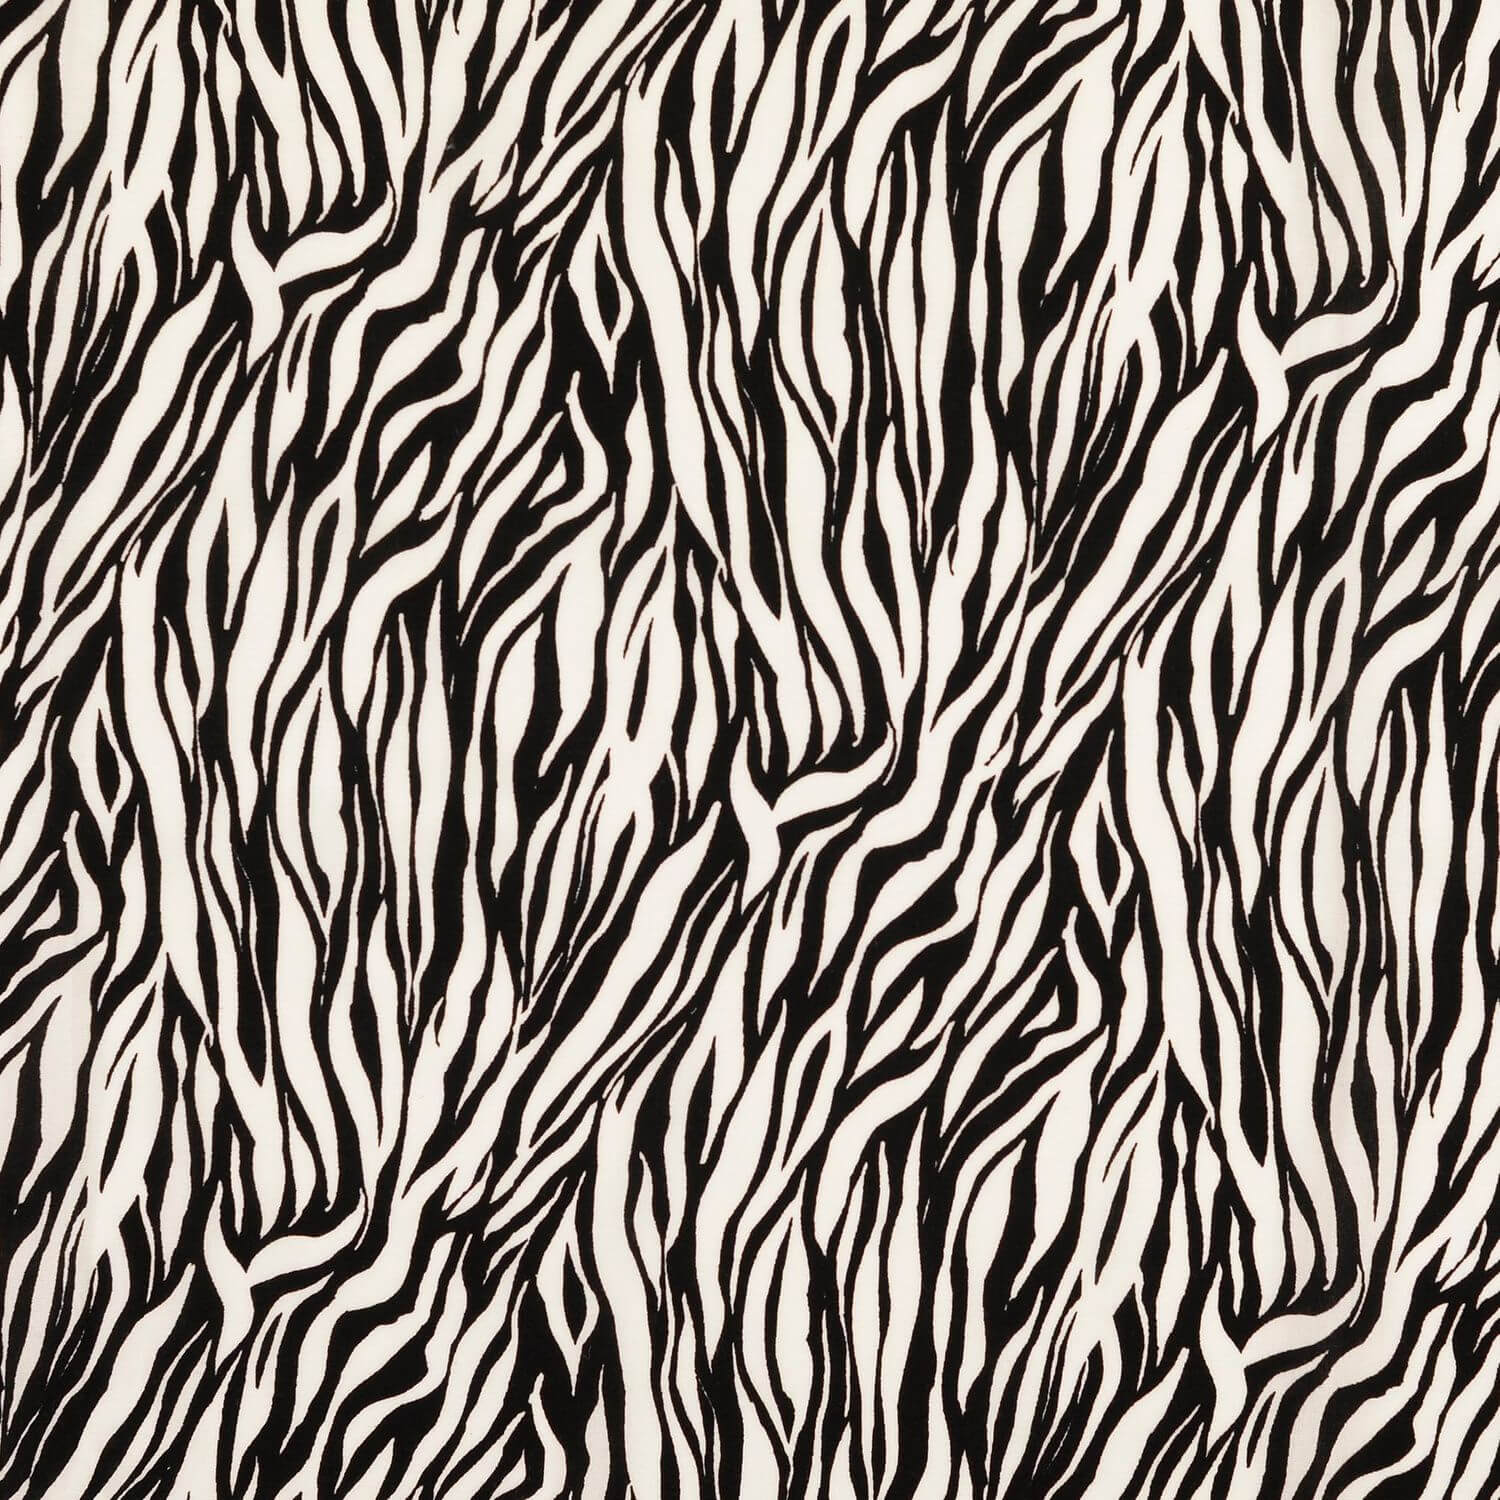 Viskose Popeline - Animalprint Zebra Schwarz auf Weiß